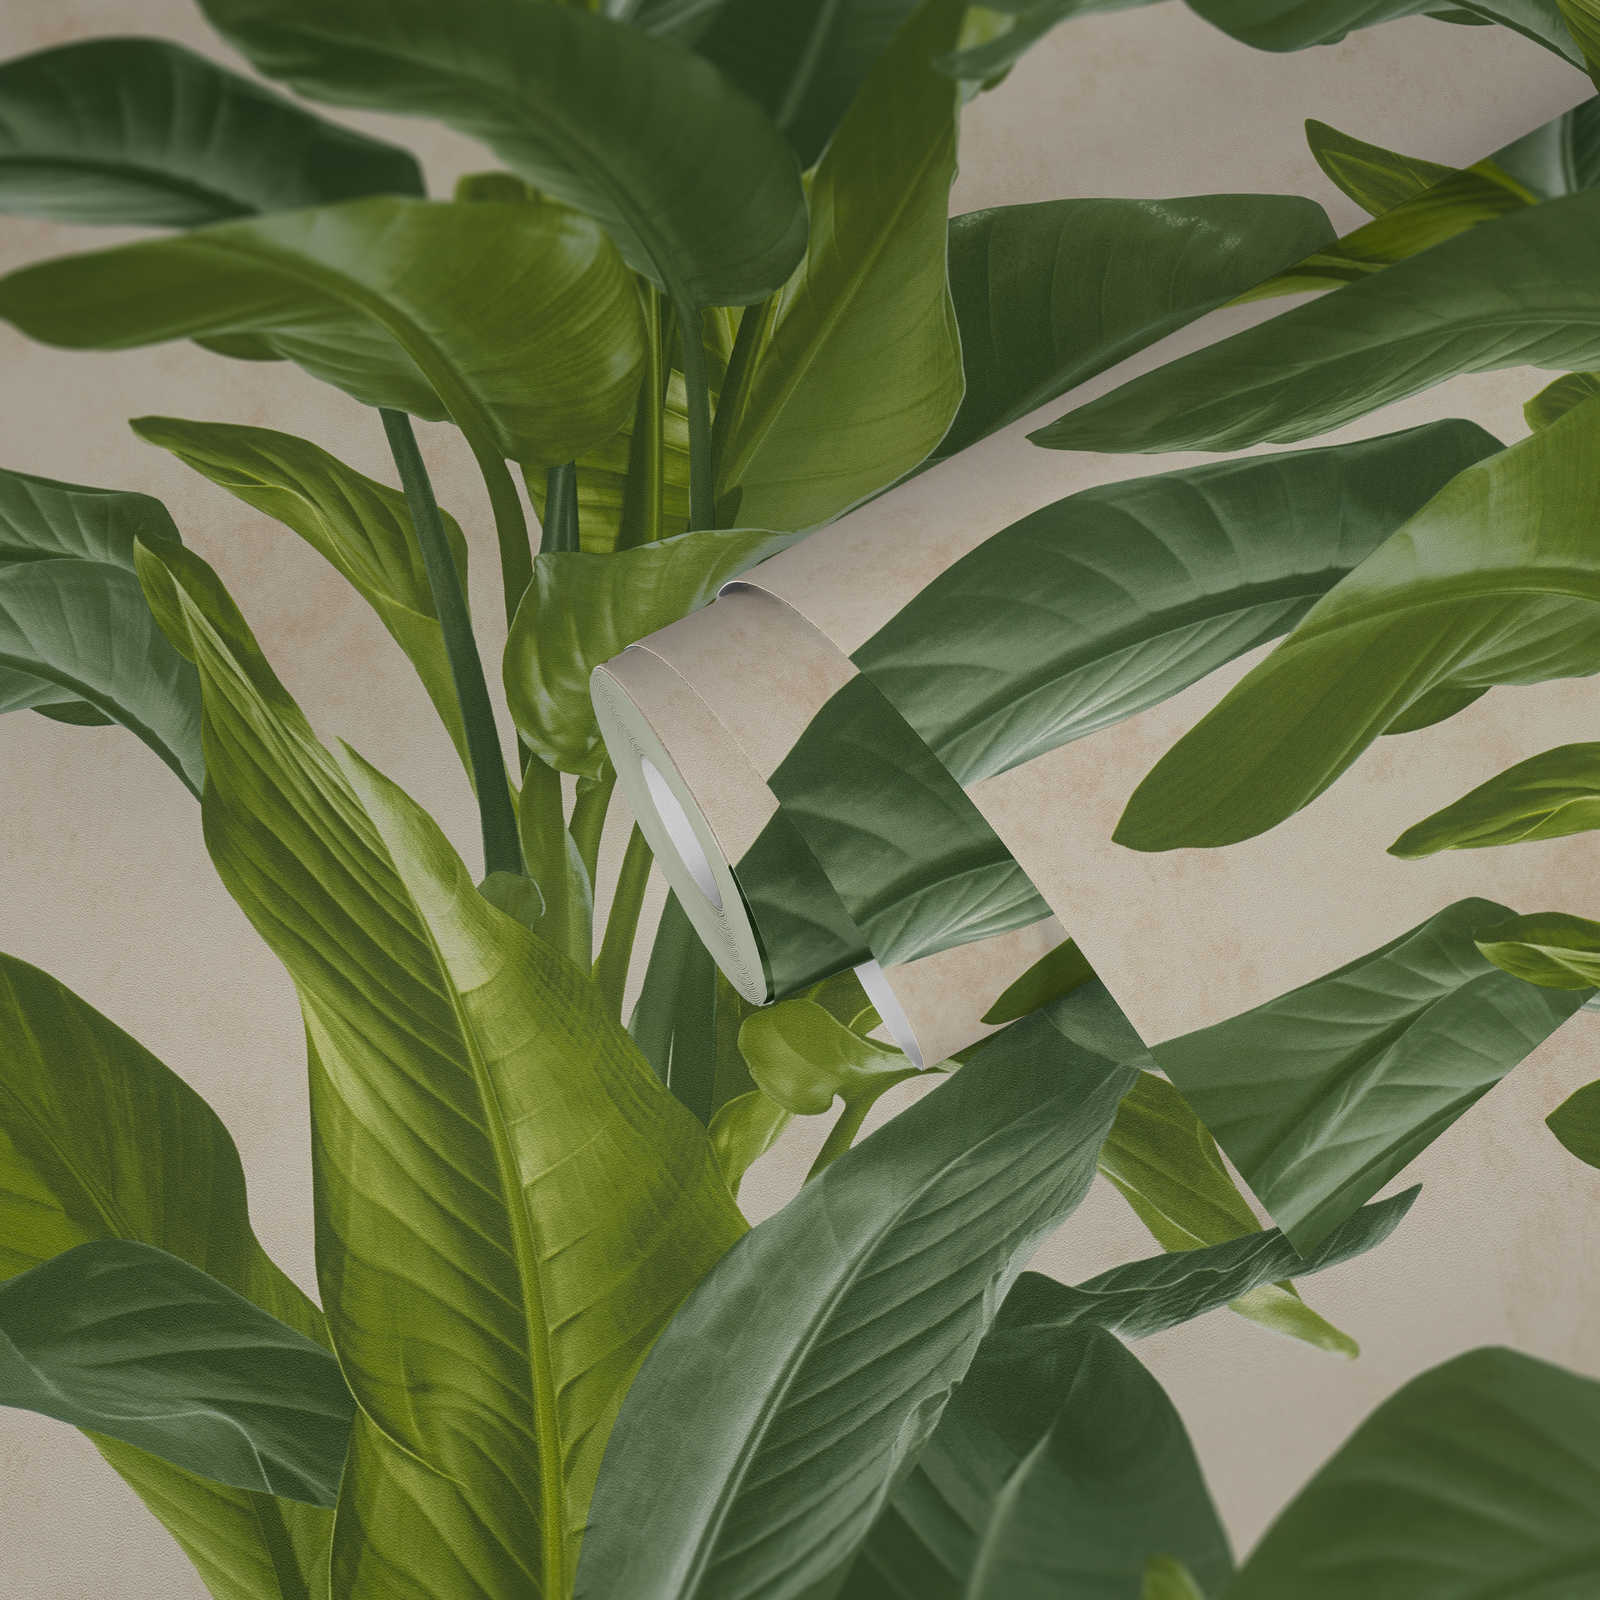             Papier peint intissé avec motif moderne de feuilles - crème, vert
        